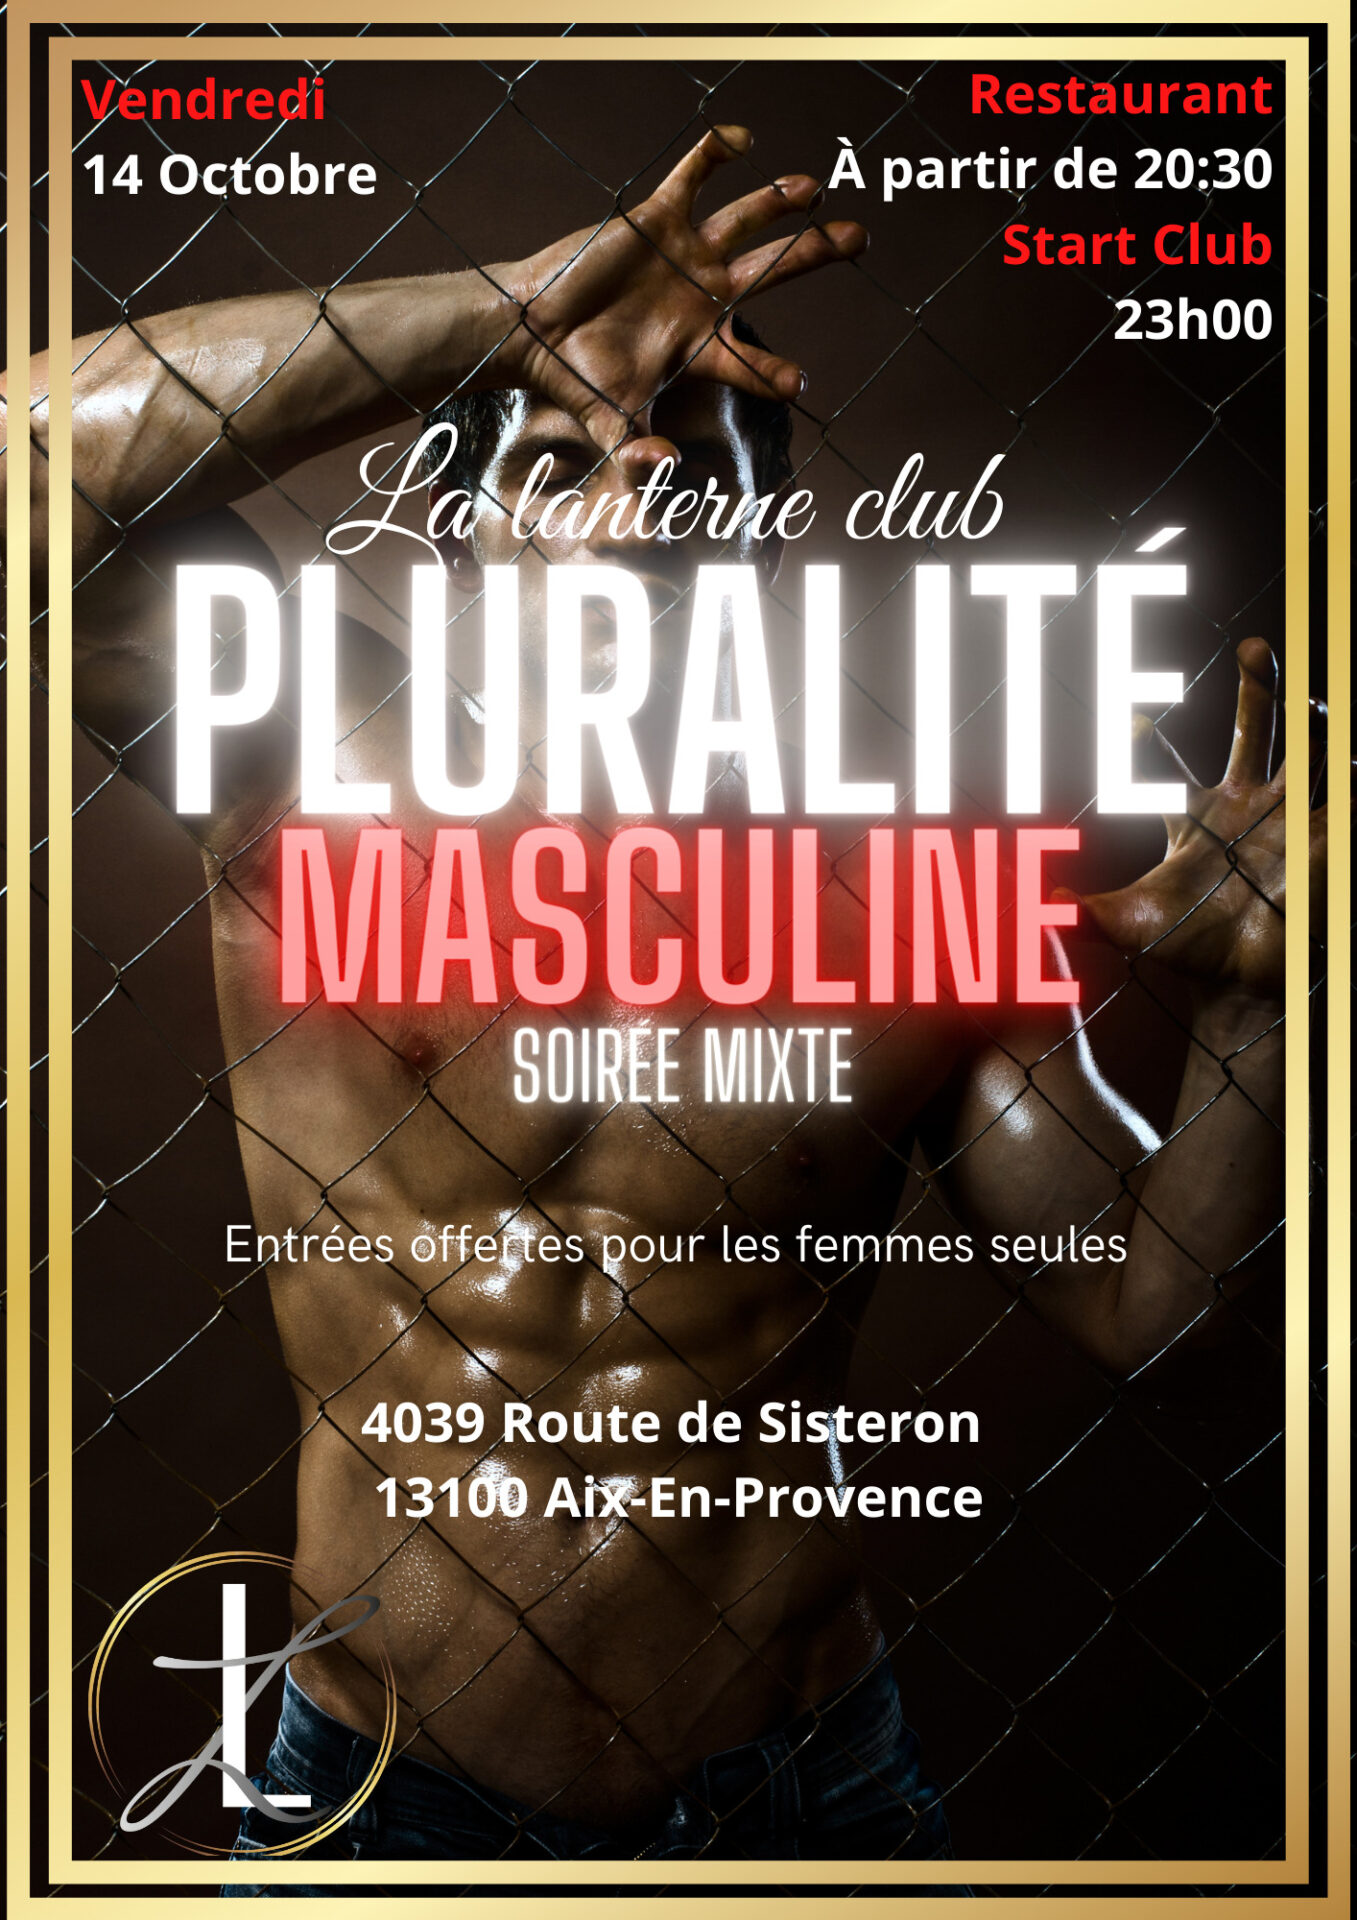 Flyer soirée mixte pluralité masculine à la Lanterne vendredi 14 octobre